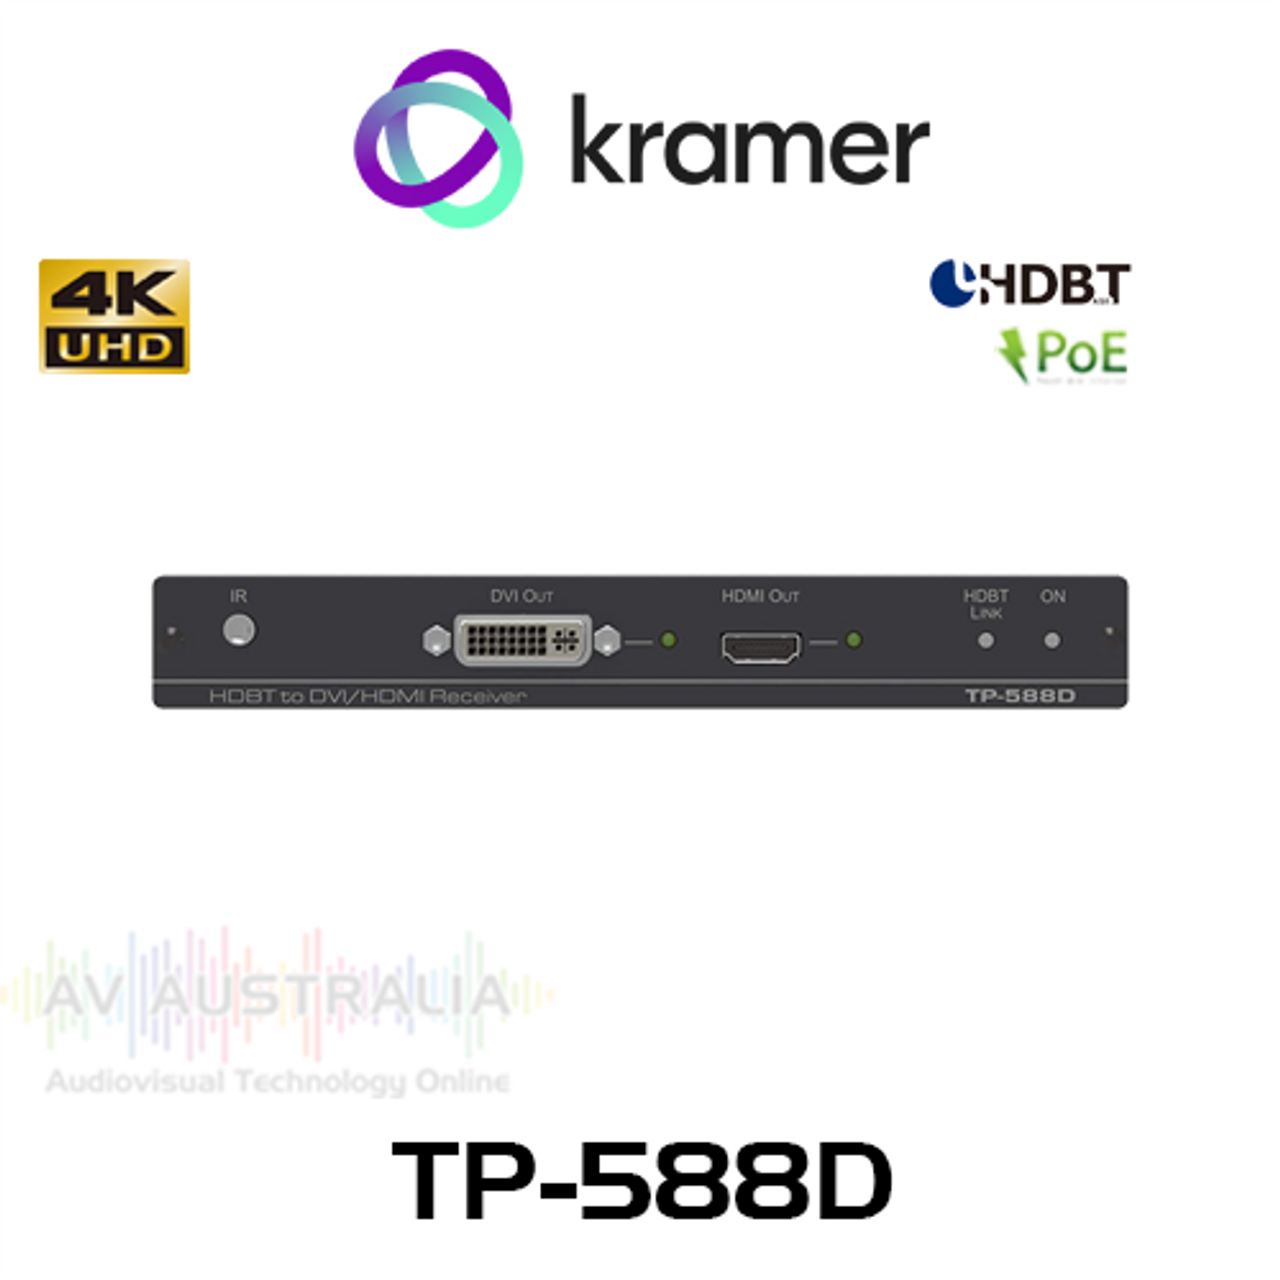 Kramer TP-588D 4K60 4:2:0 HDMI/DVI With Ethernet, IR, RS-232 over HDBaseT PoE Receiver (100m)